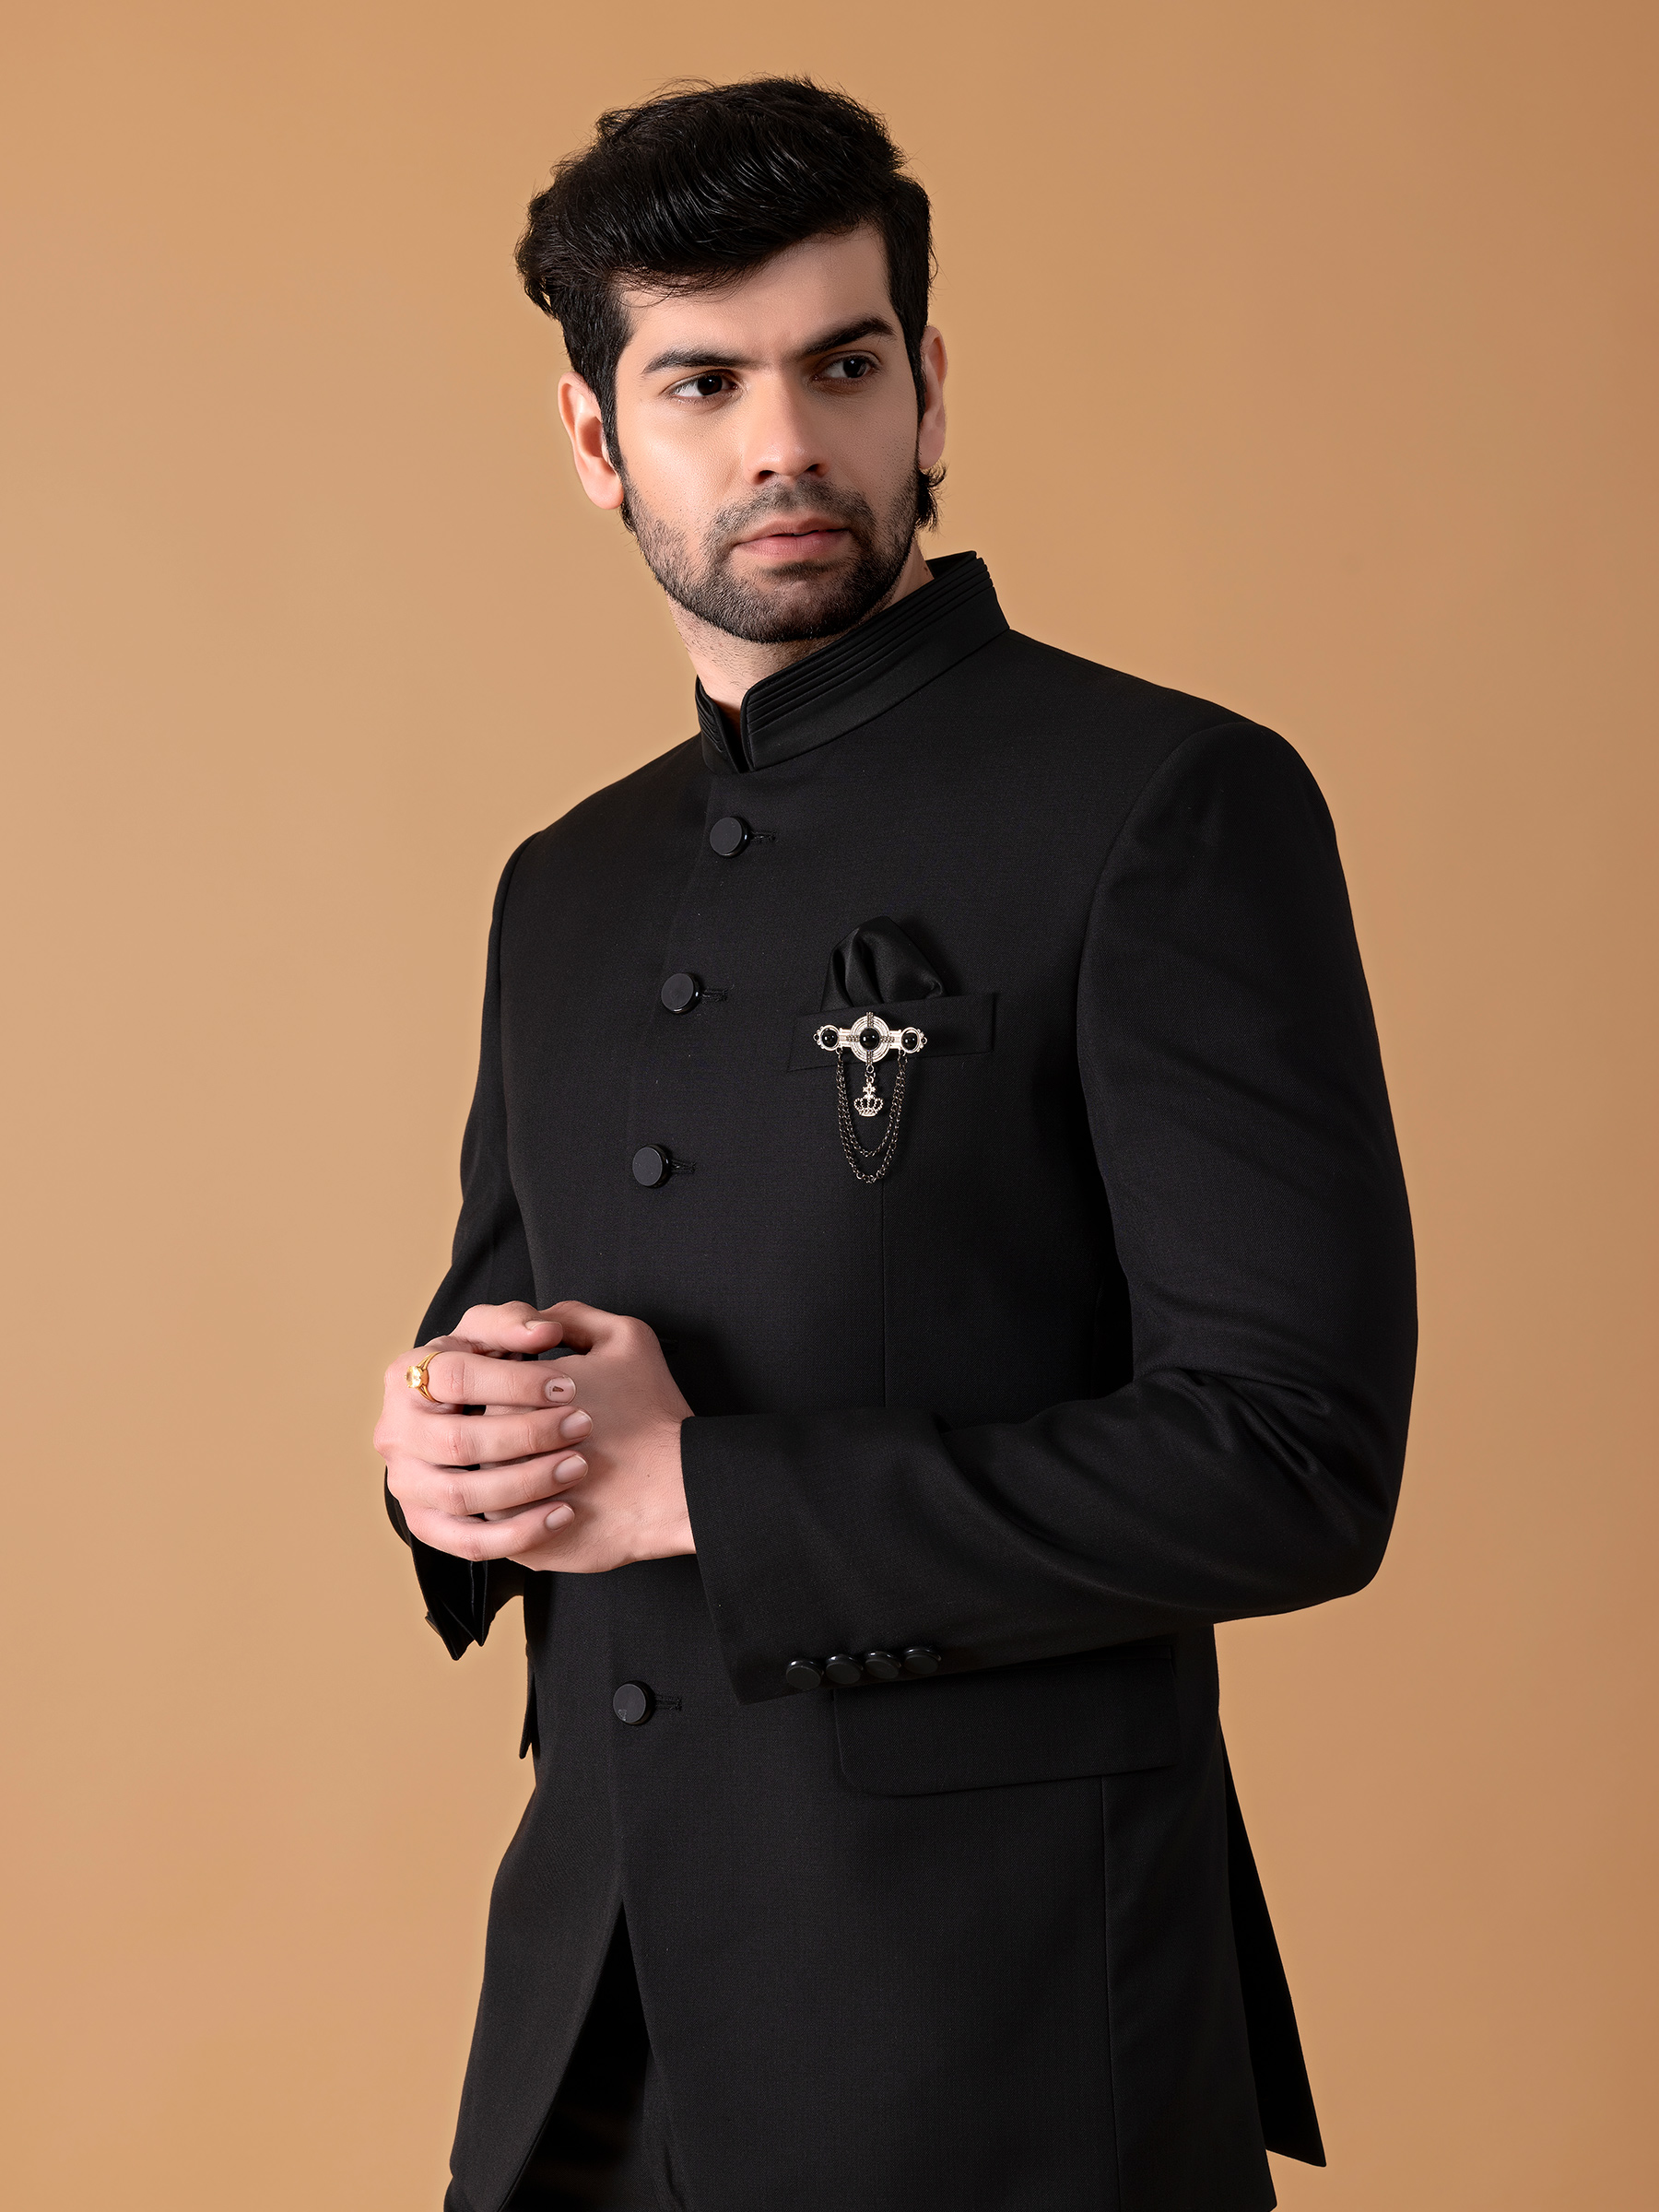 Buy GROOM BLACK DRESS, Black Jodhpuri Suit, Groom Jodhpuri Suit, Groom  Wedding Suit, Men Wedding Suit, Black Prince Coat, Black Prince Suit Online  in India - Etsy